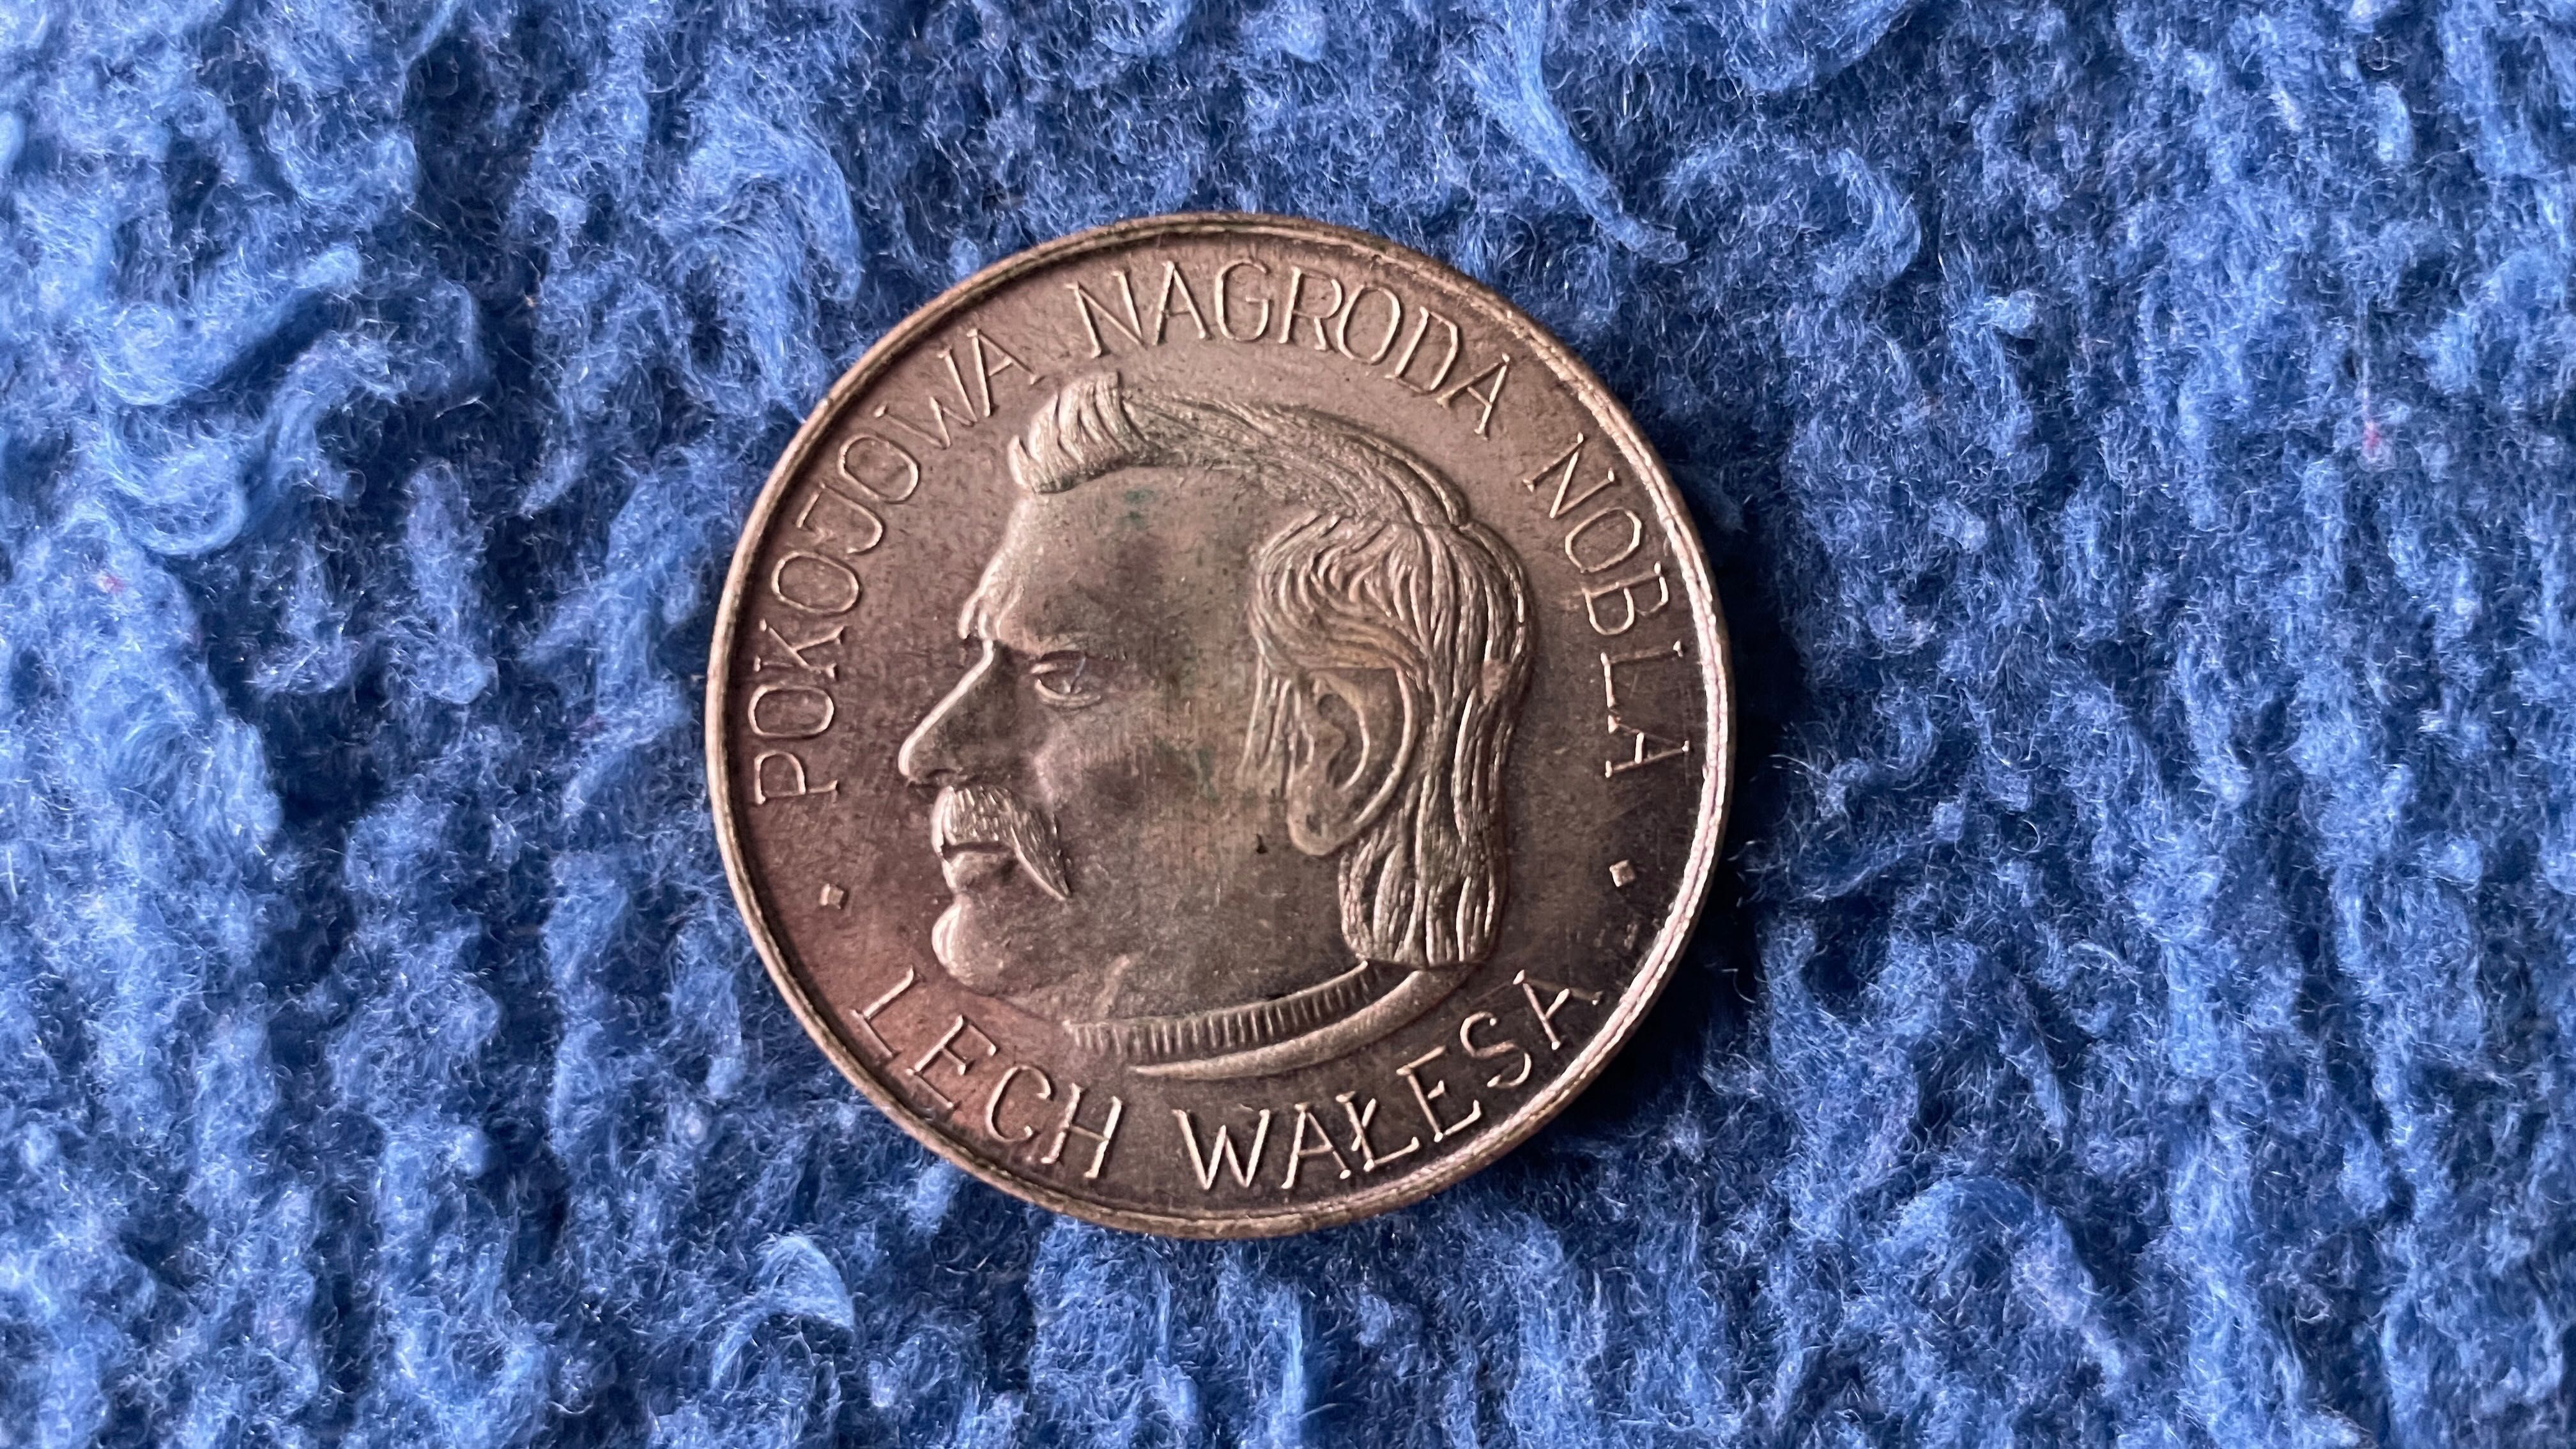 Moneta Pokojowa Nagroda Nobla - Lech Wałęsa 1983r.